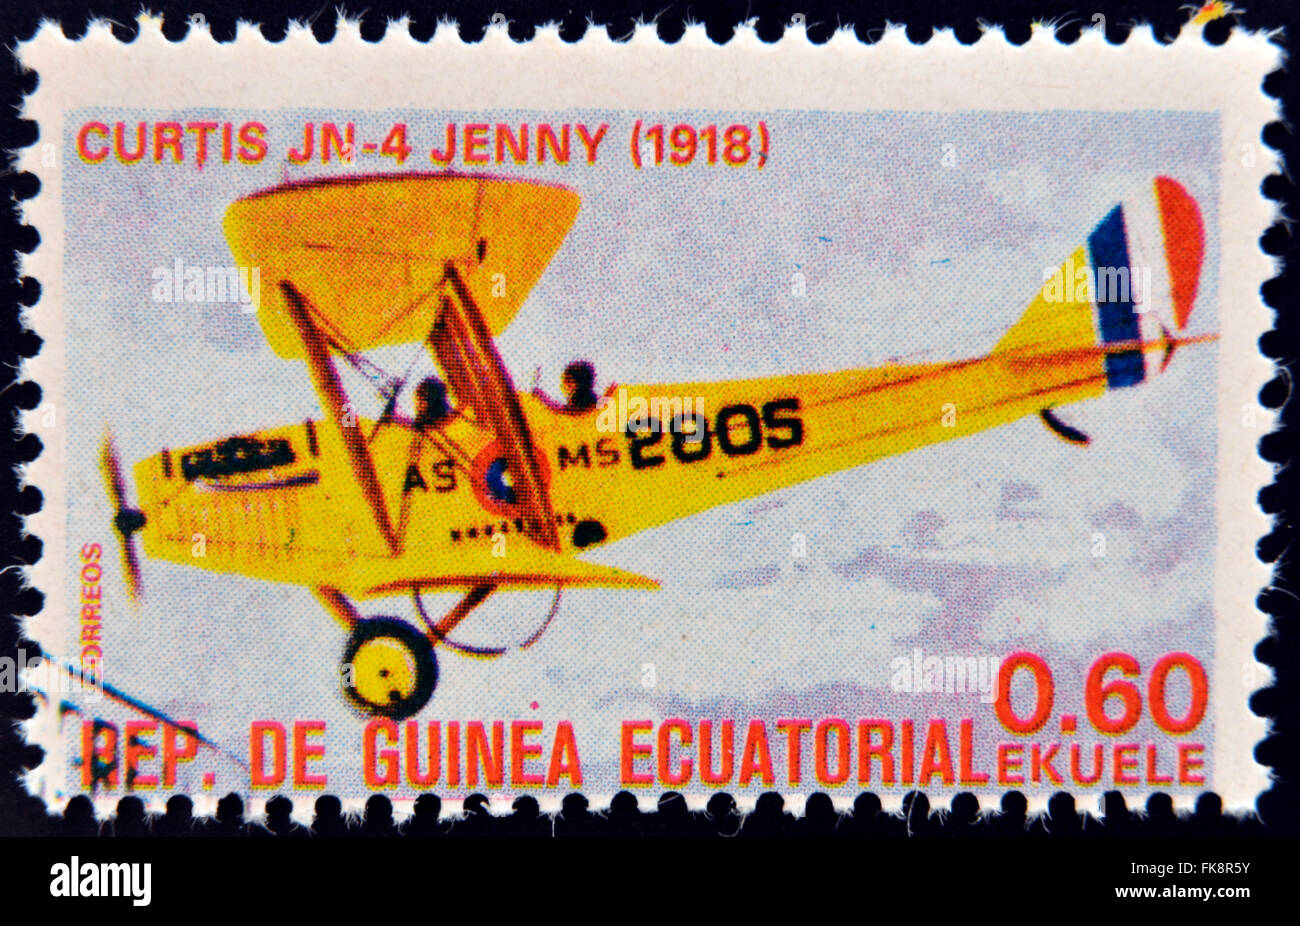 Guinée Équatoriale - circa 1974 : timbre imprimé en Guinée dédié à l'histoire de l'aviation présente Curtiss JN-4 'Jenny', 1918 Banque D'Images